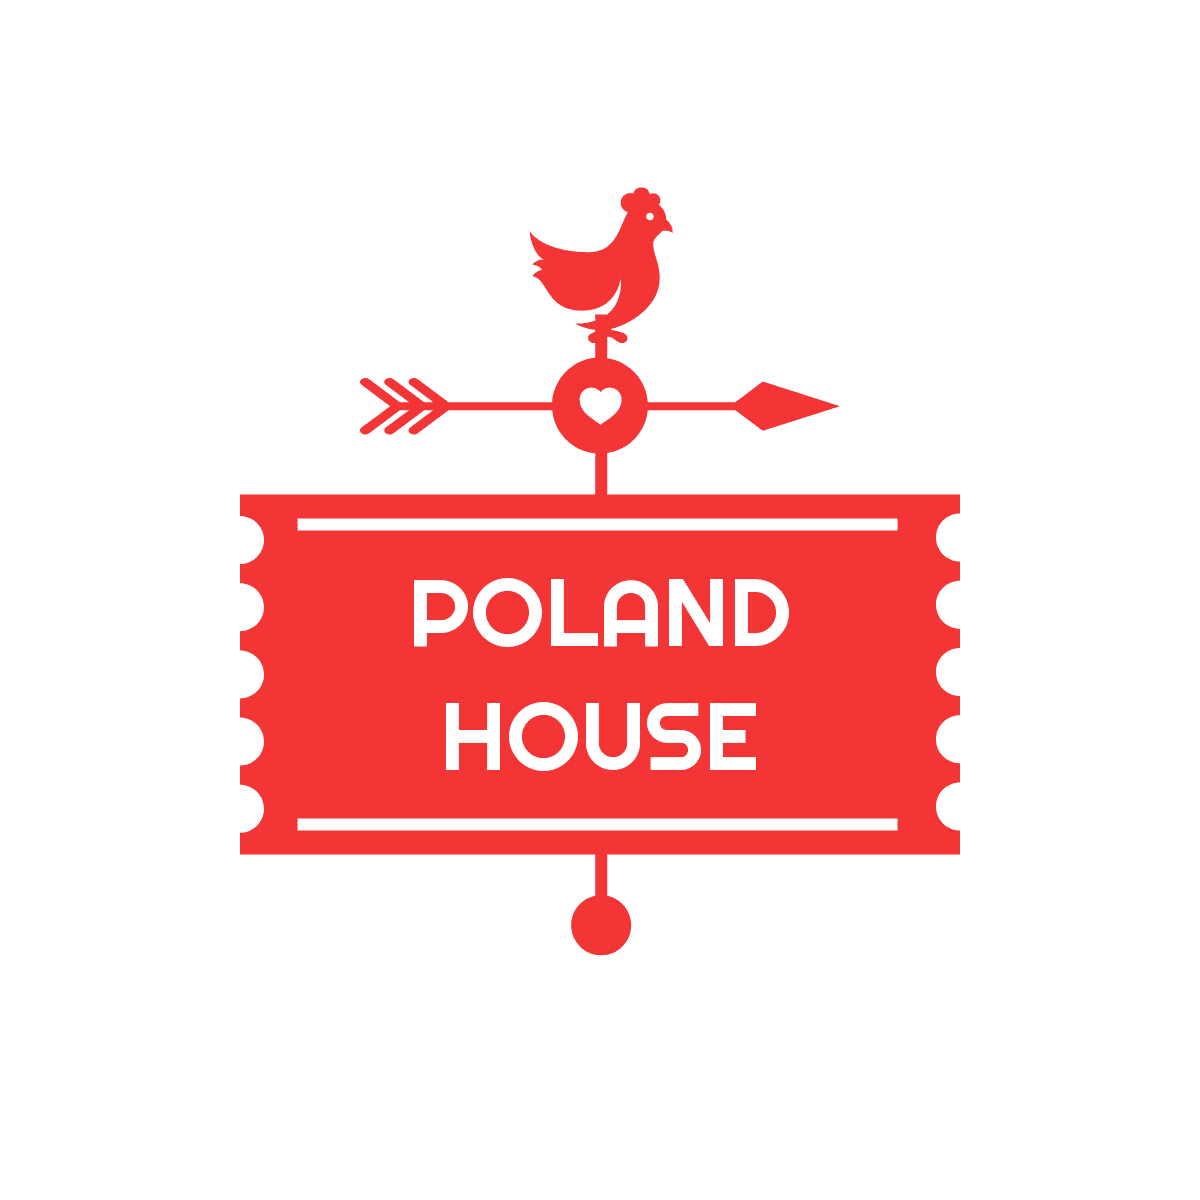 POLAND HOUSE